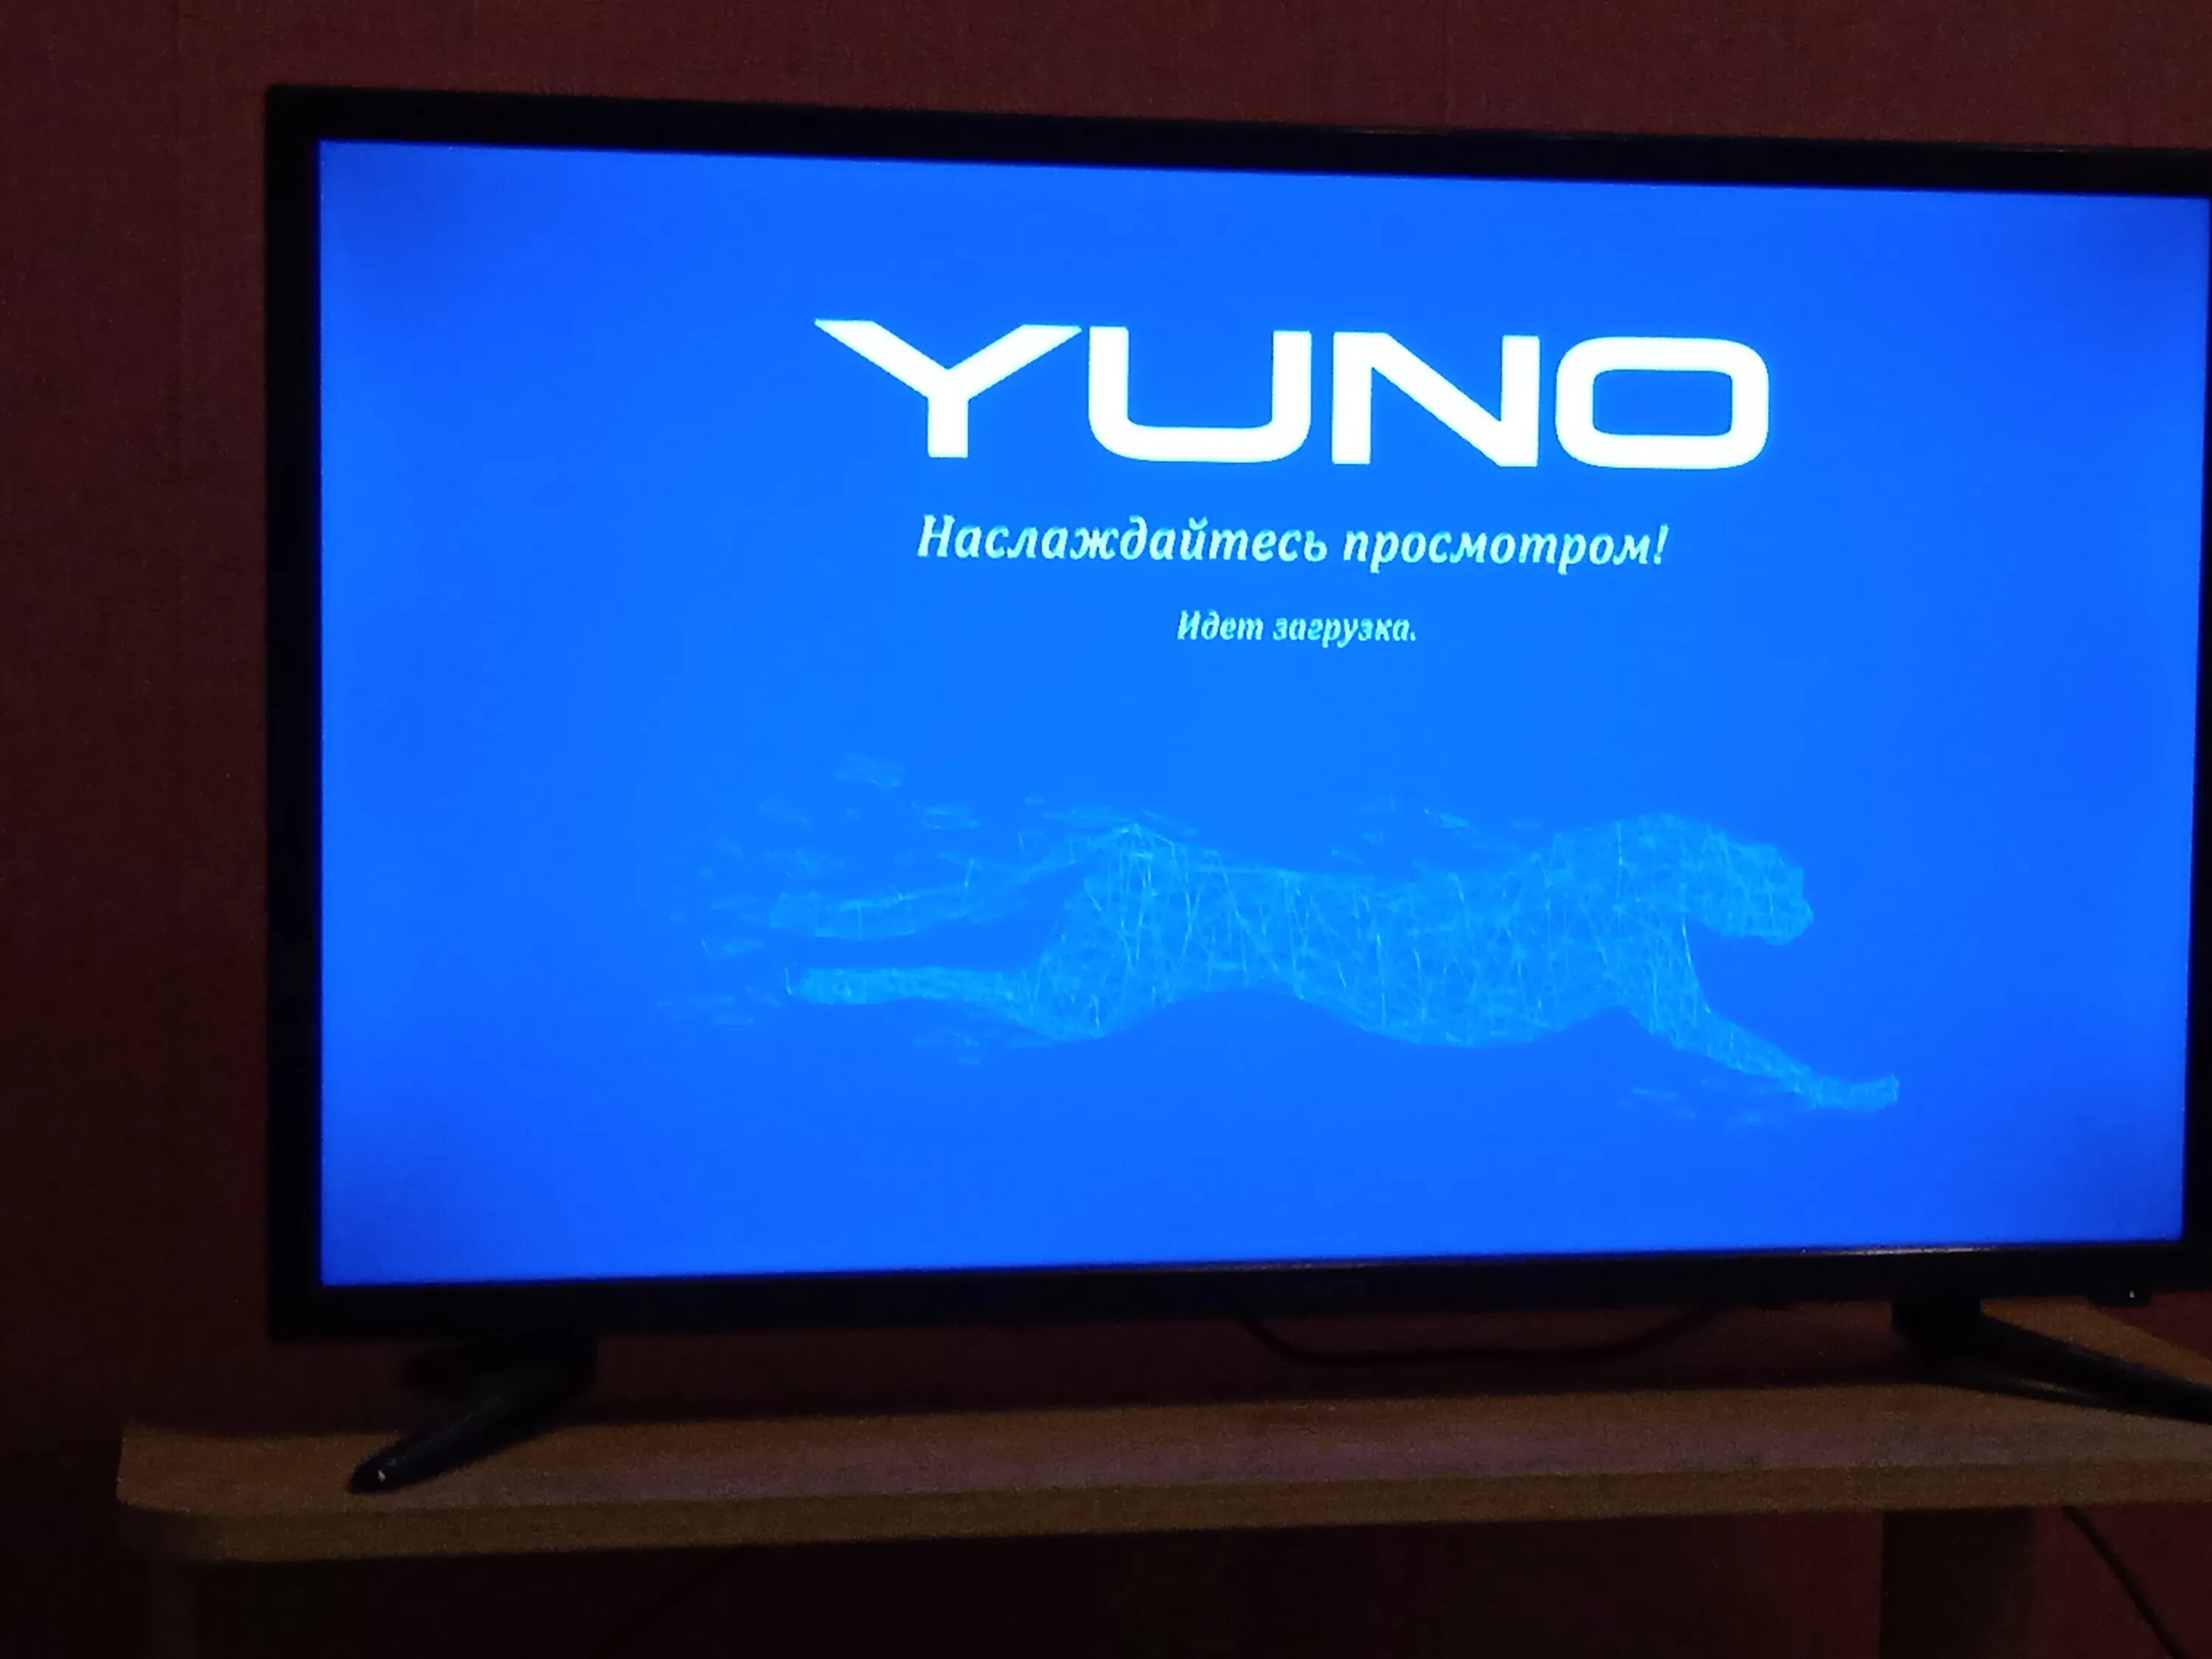 Телевизор yuno купить. Телевизор Yuno. Телевизор виснет. Заставка на телевизор. Заставки BBK на телевизоре.